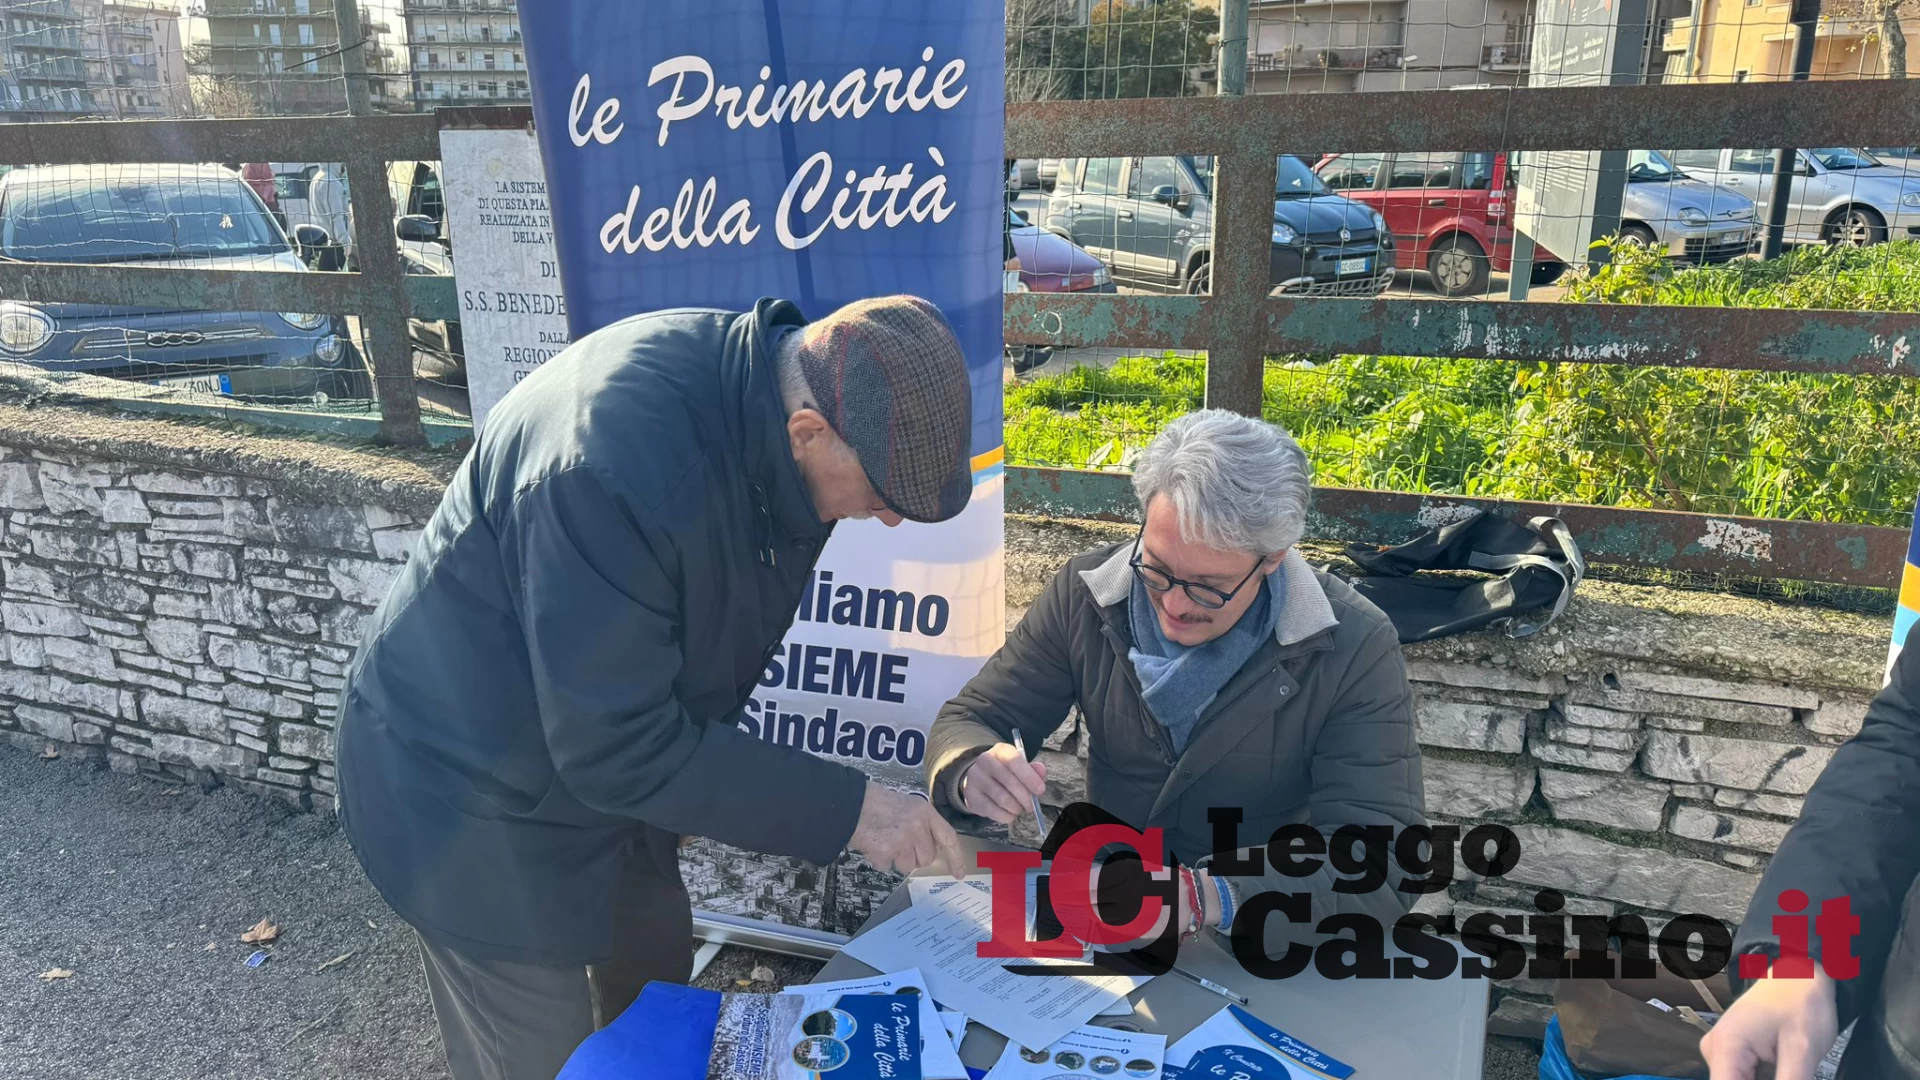 Primarie di Cassino, Gianrico Langiano avvia la raccolta firme